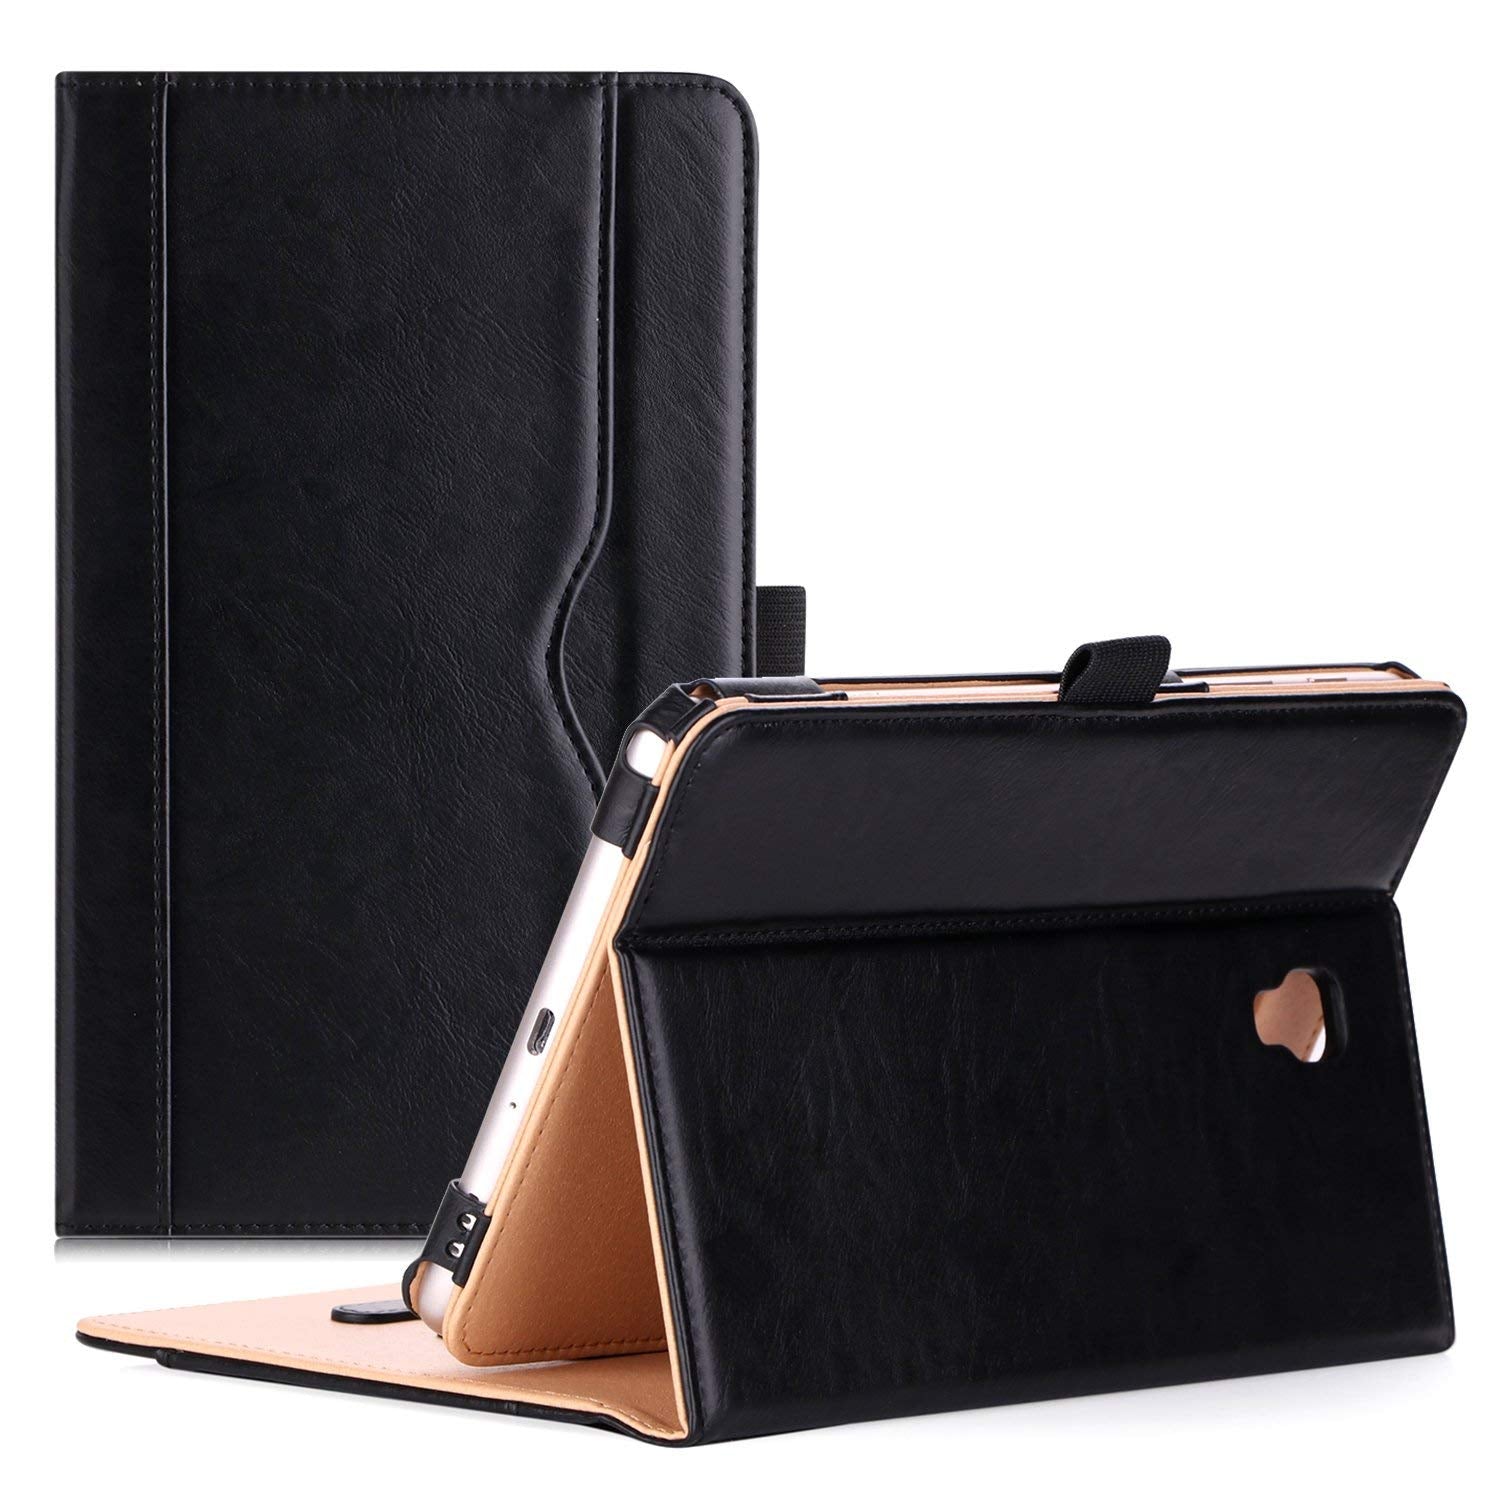 Galaxy Tab A 8.0 2017 T380 Leather Folio Case